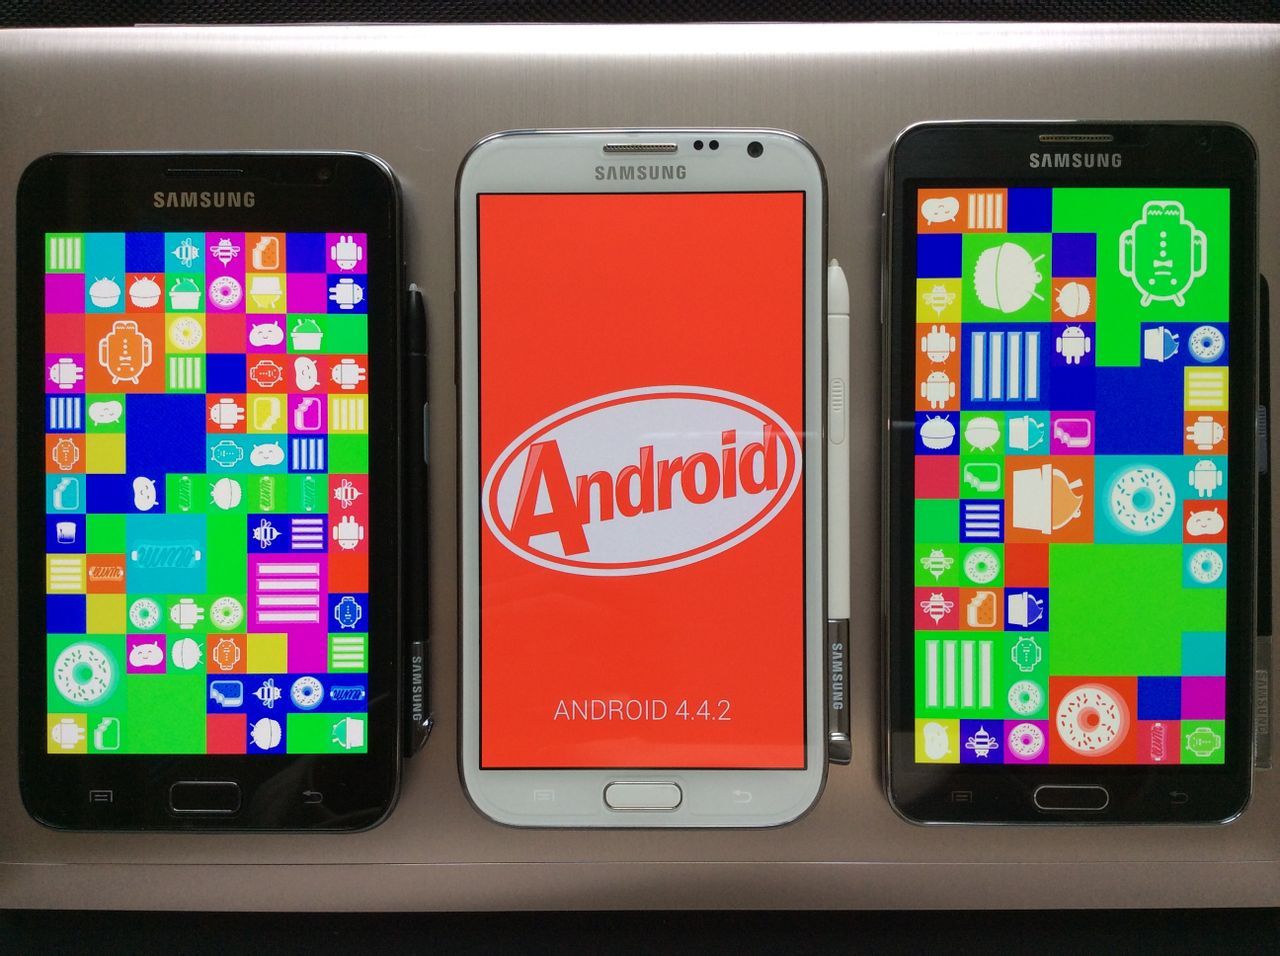 三星Galaxy Z Fold2 5G手机发布 近乎完美的折叠屏_3DM单机